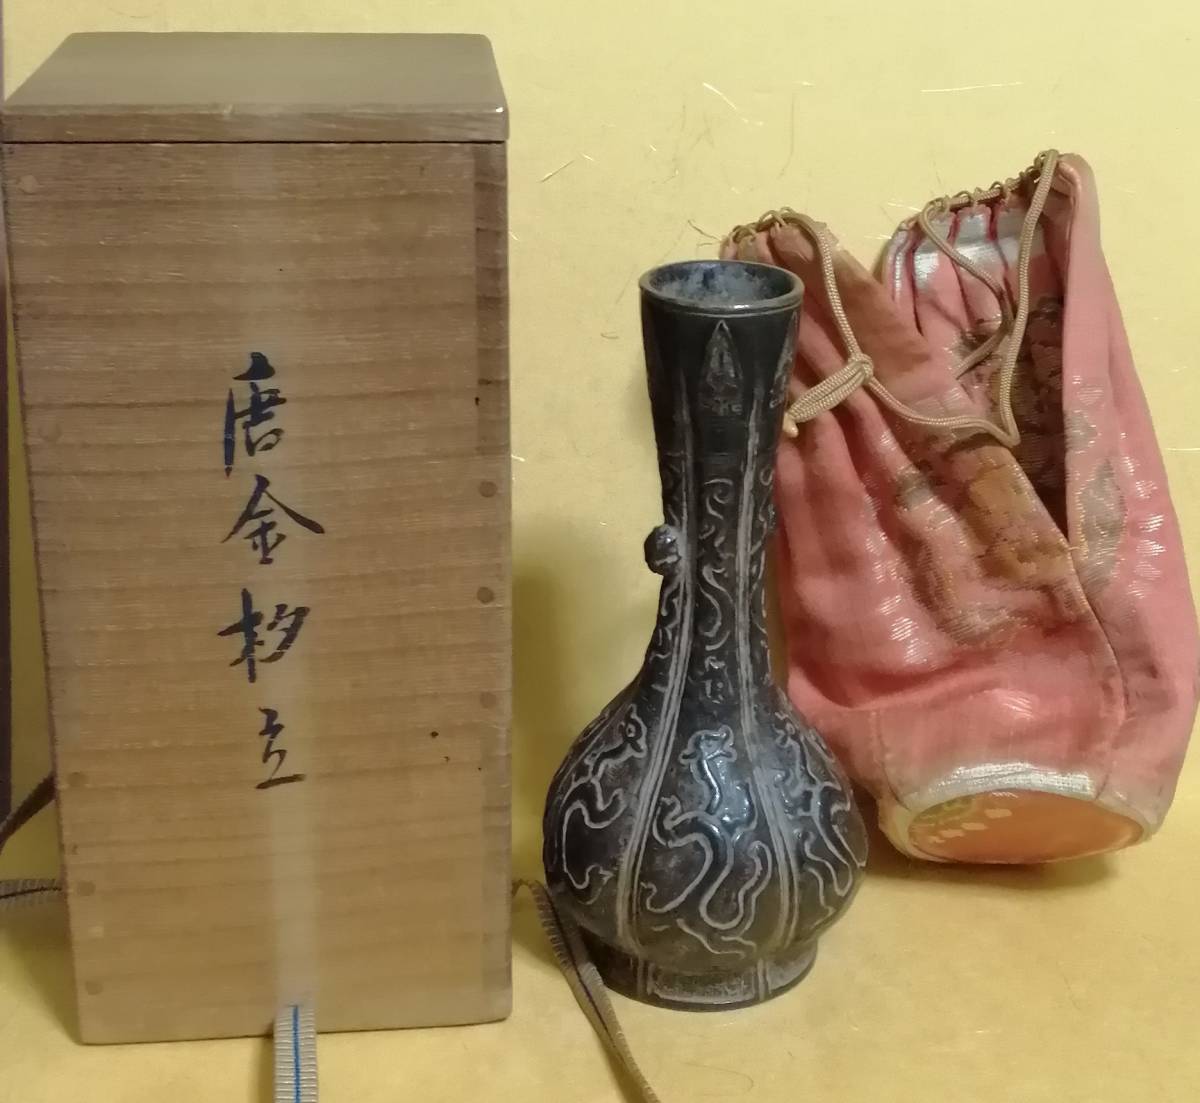 中国 宋代 古銅 銅器 獣面環付 龍紋刻文 寸松庵蔵品 花瓶 置物 唐物 共箱 茶道具 時代保証 本物保証